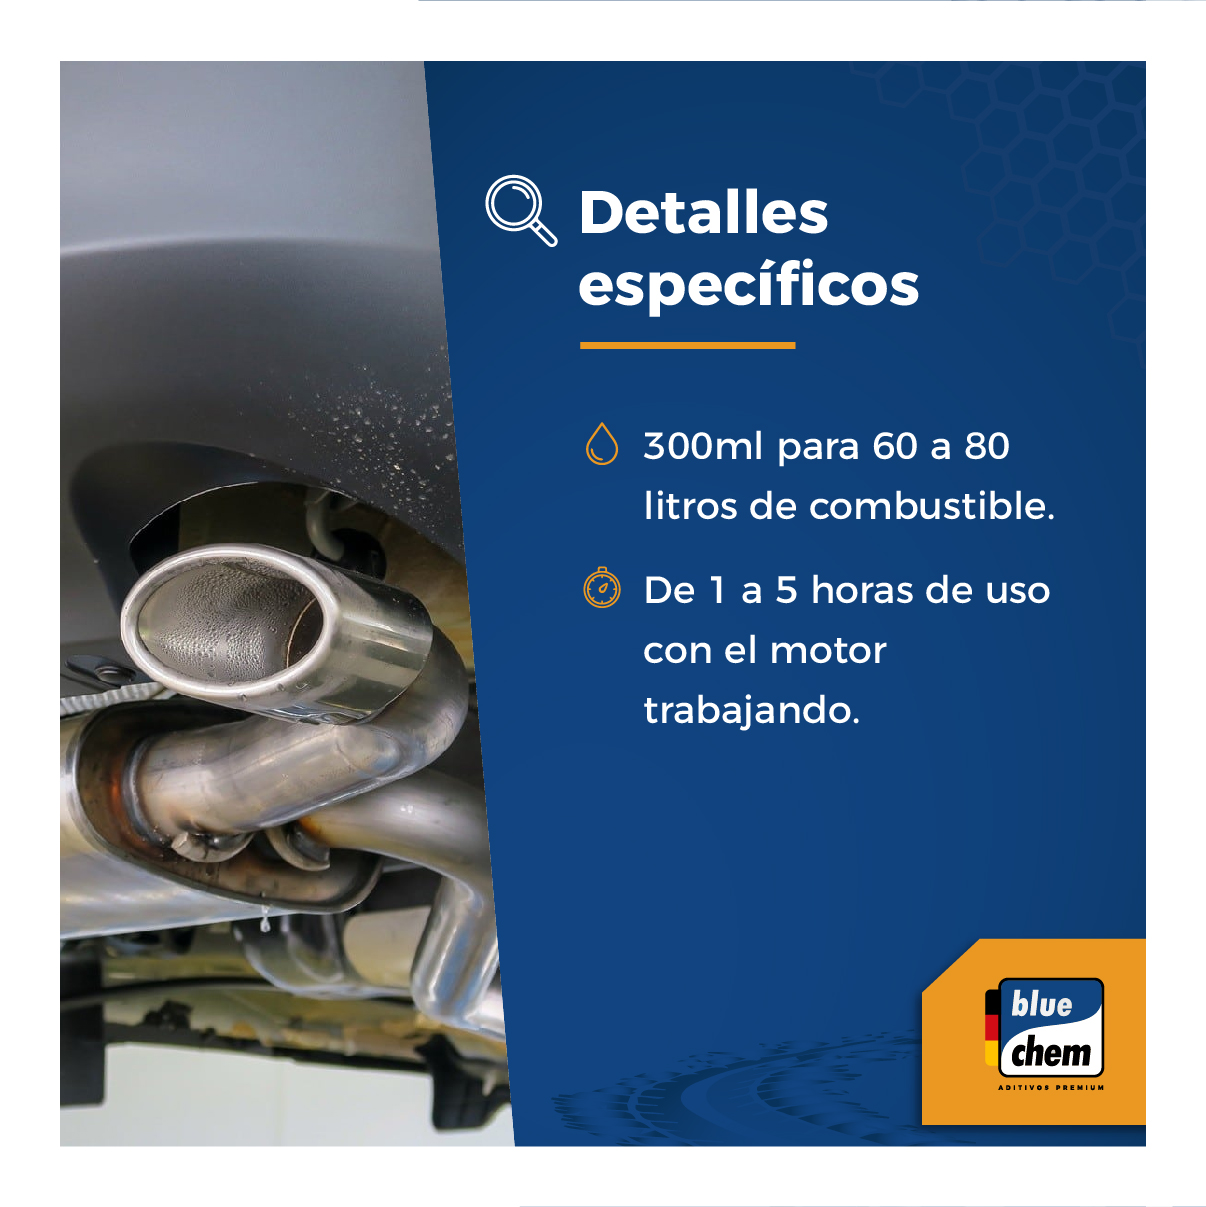 Bluechem Guatemala on X: Limpia tu catalizador solo con aplicar oxicat al  tanque de combustible, y puedes realizar la limpieza del catalizador  #HerramientasLiquidas  / X